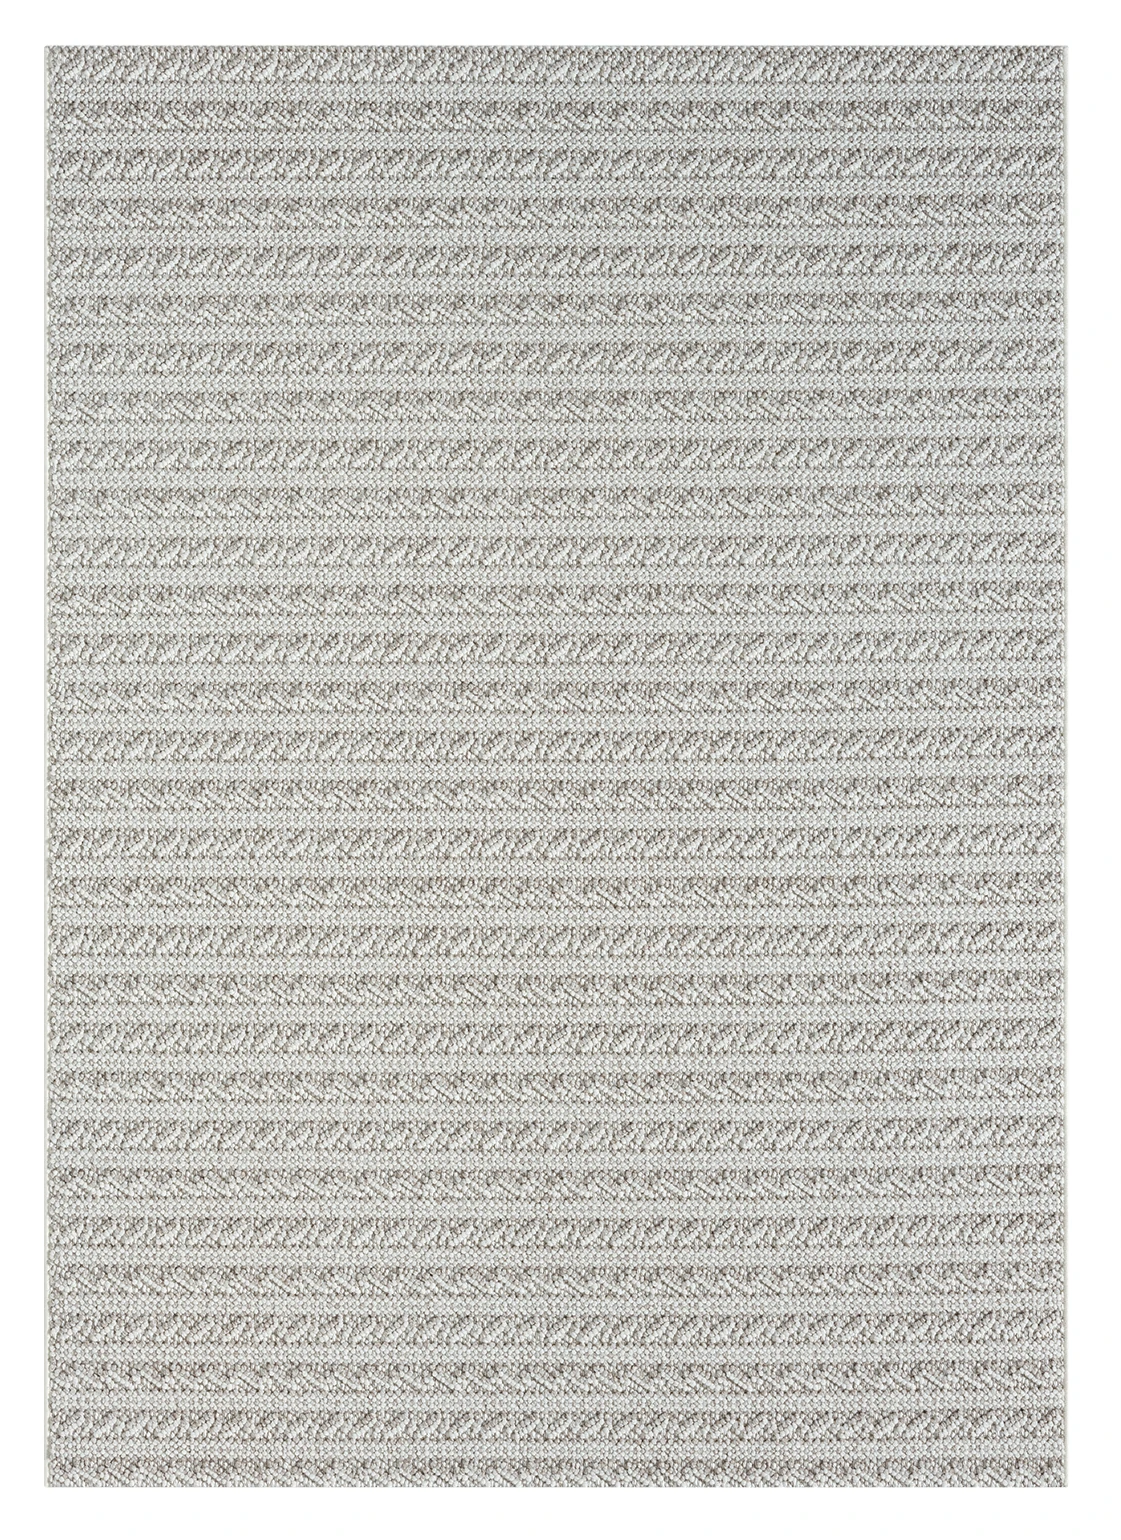 שטיח דגם CALIFORNIA לולאות משולבות צבע בז' לבן   : Thumb 3